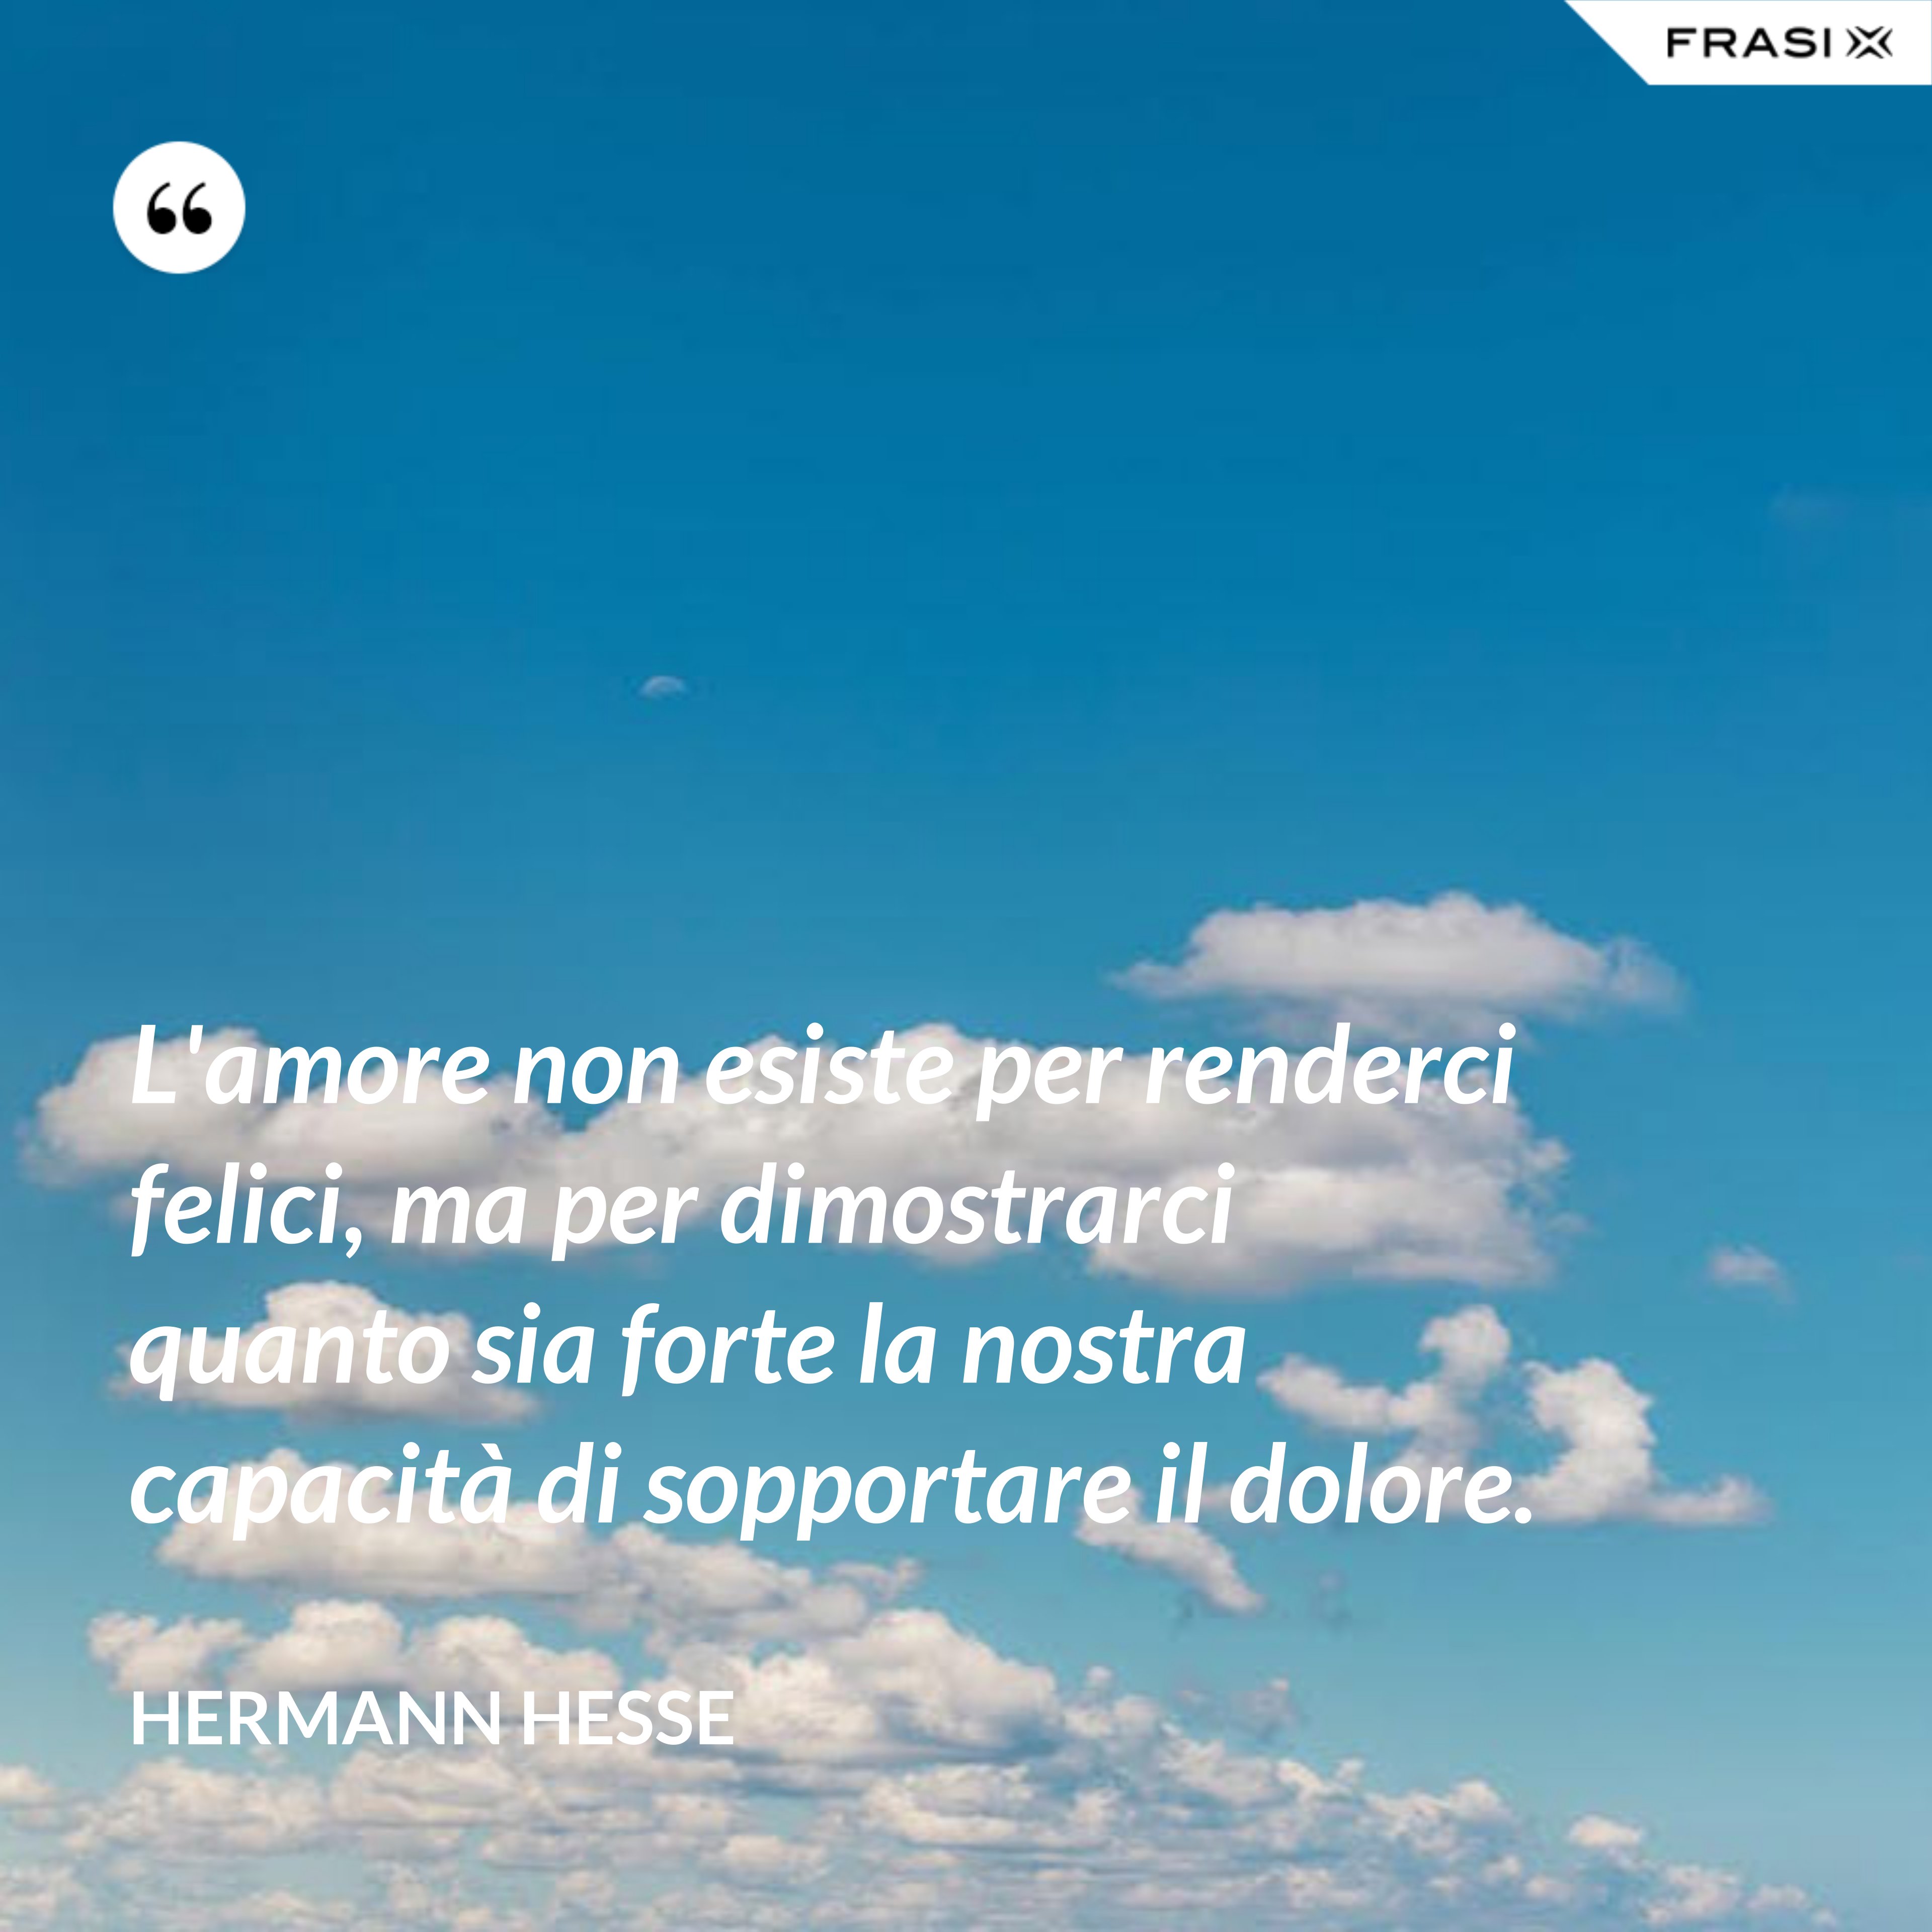 L'amore non esiste per renderci felici, ma per dimostrarci quanto sia forte la nostra capacità di sopportare il dolore. - Hermann Hesse